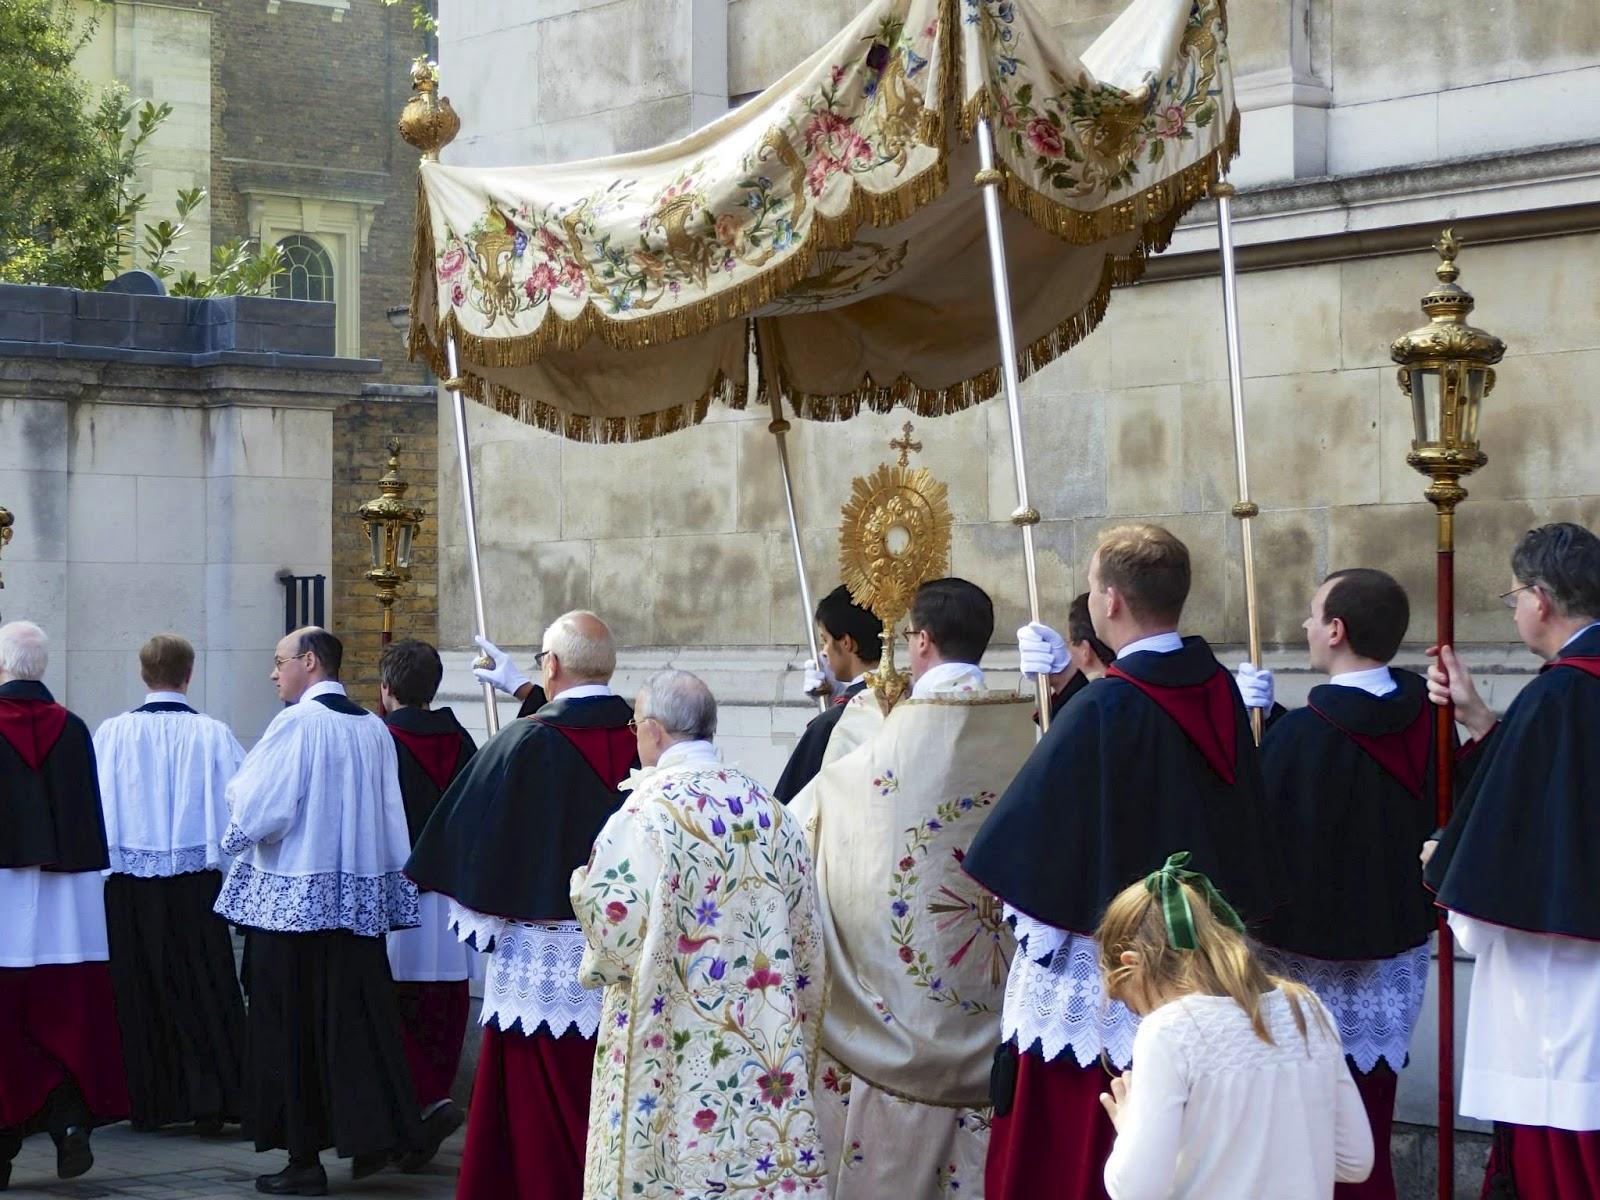 Rituali di processioni eucaristiche